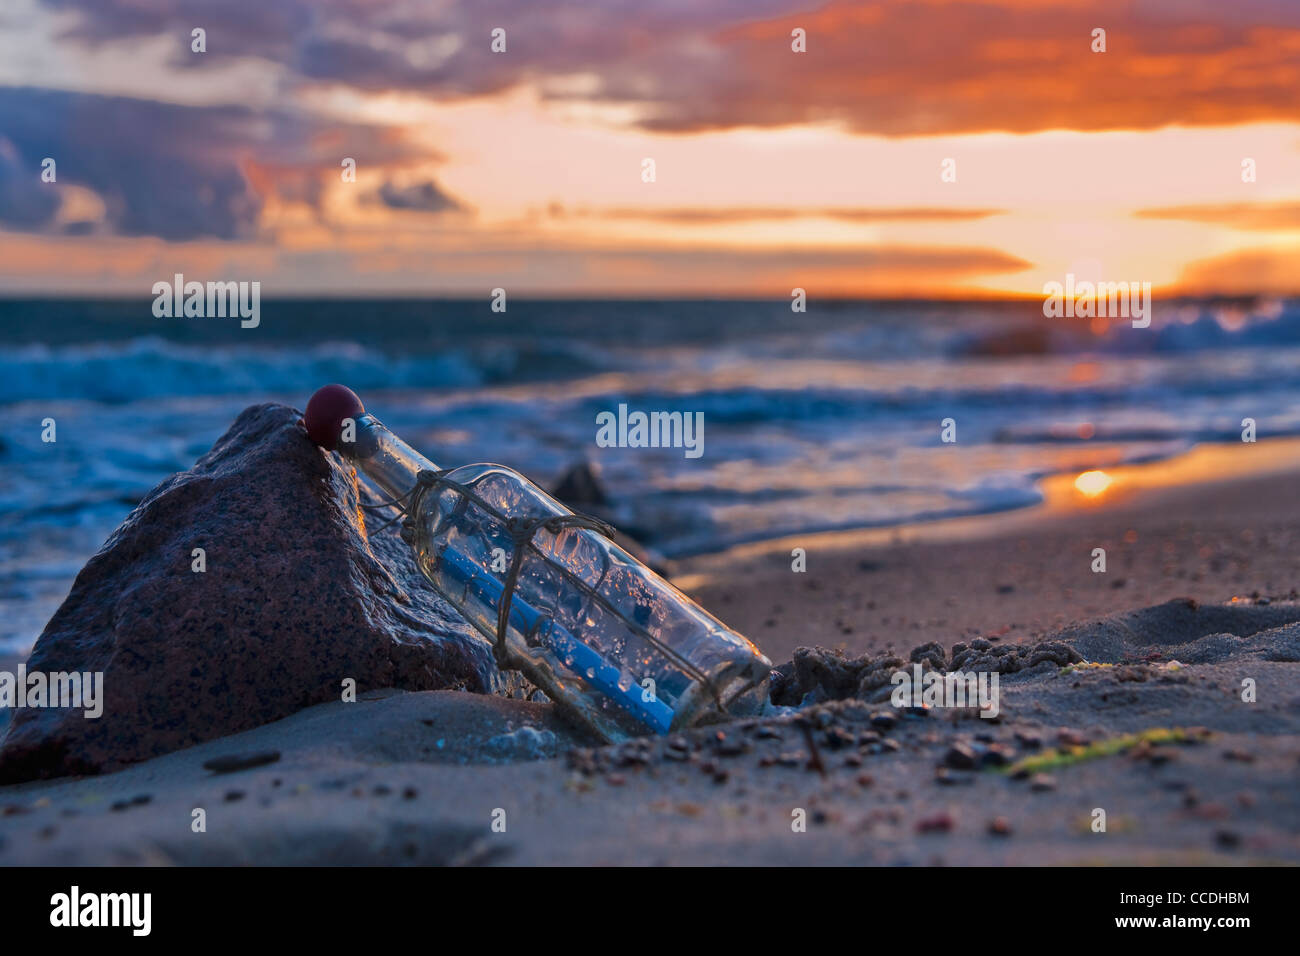 Photo détail d'un message dans une bouteille, se penchant sur une pierre au bord de la mer Banque D'Images